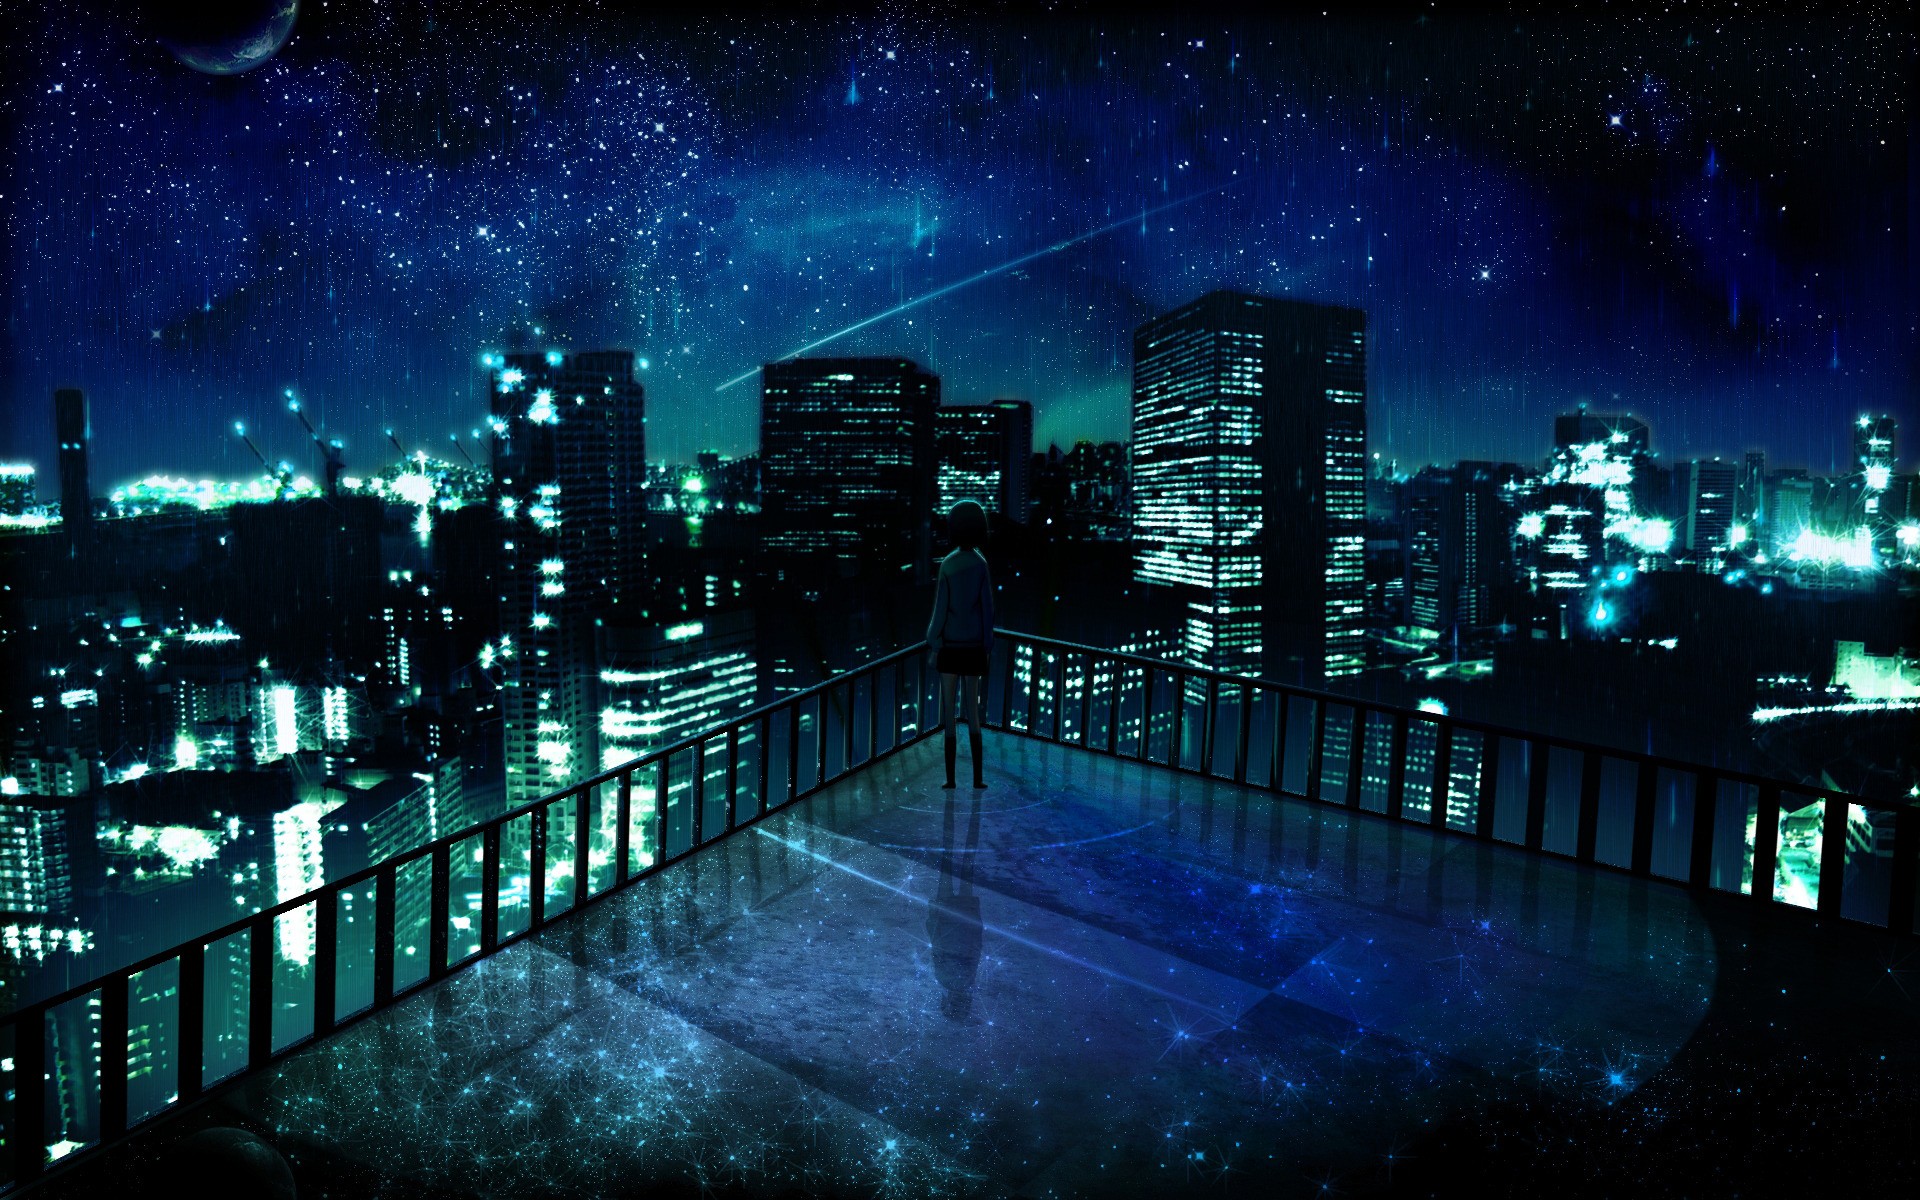 космическое пространство, города, ночь, звезды, балкон, здания, одиноко, городские огни, произведение искусства, манга, ночные пейзажи - обои на рабочий стол